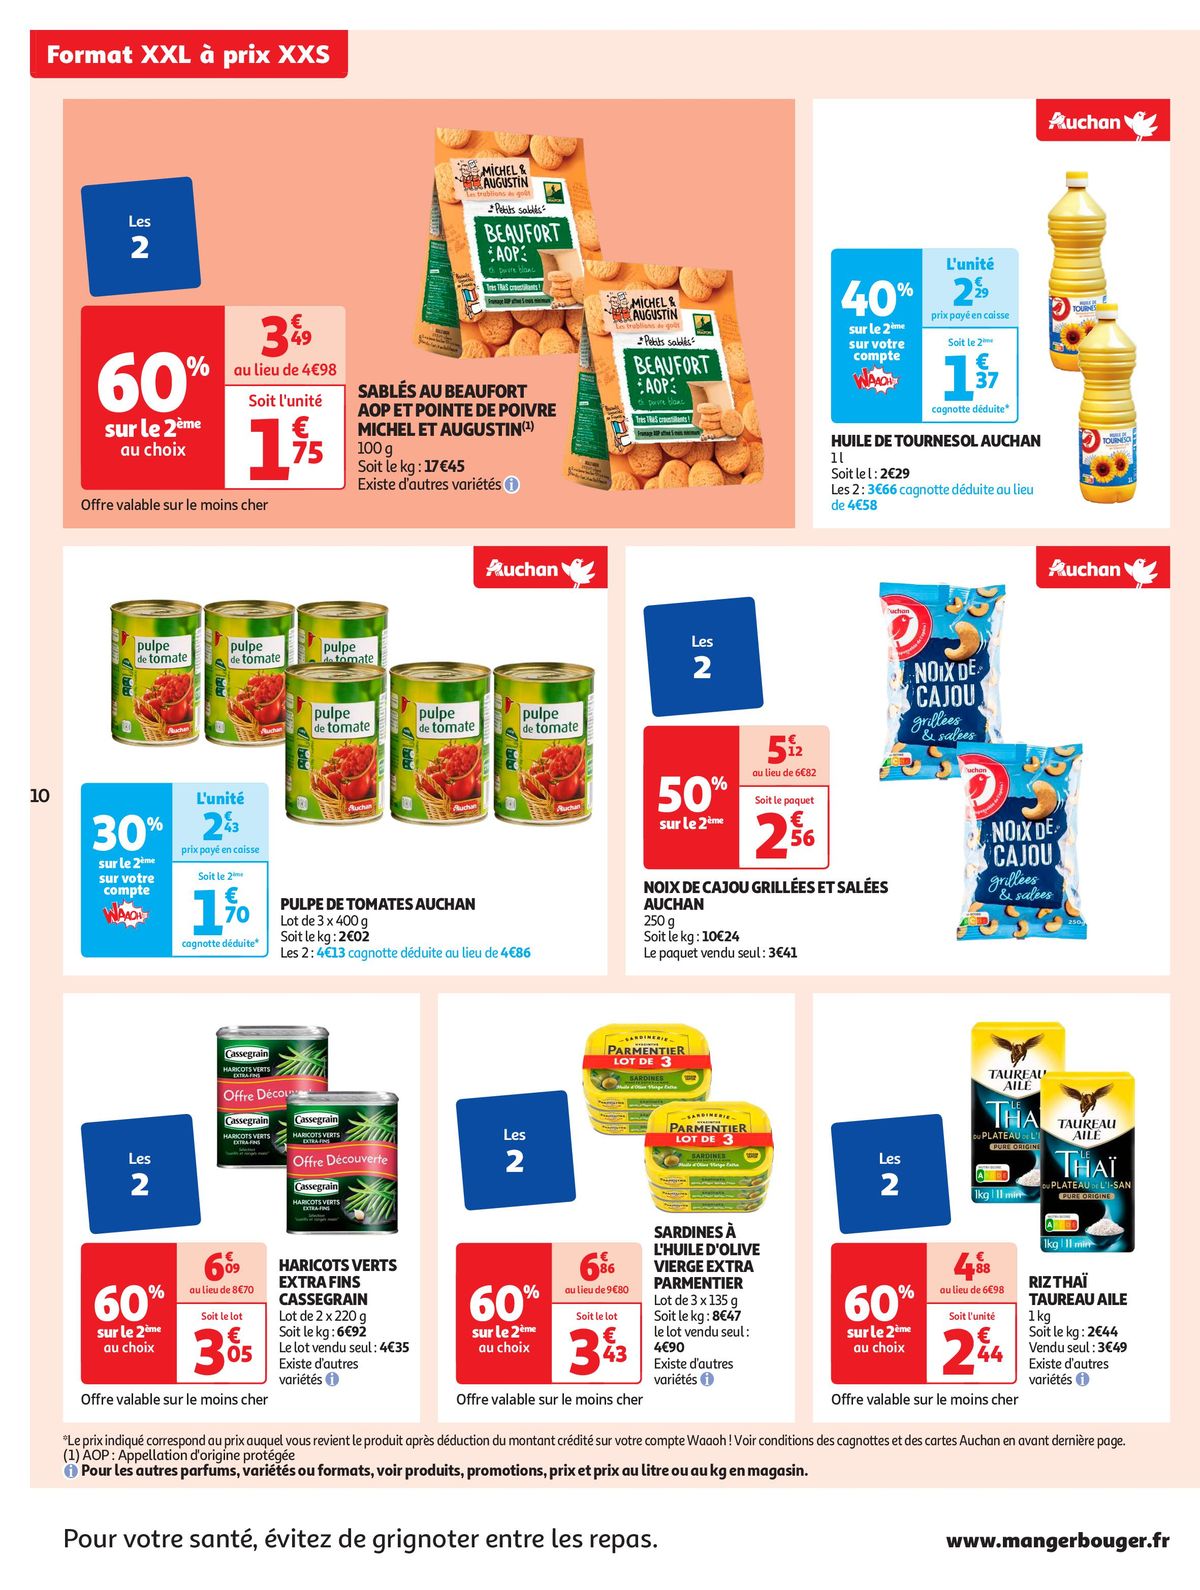 Catalogue Format XXL à prix XXS dans votre supermarché, page 00010